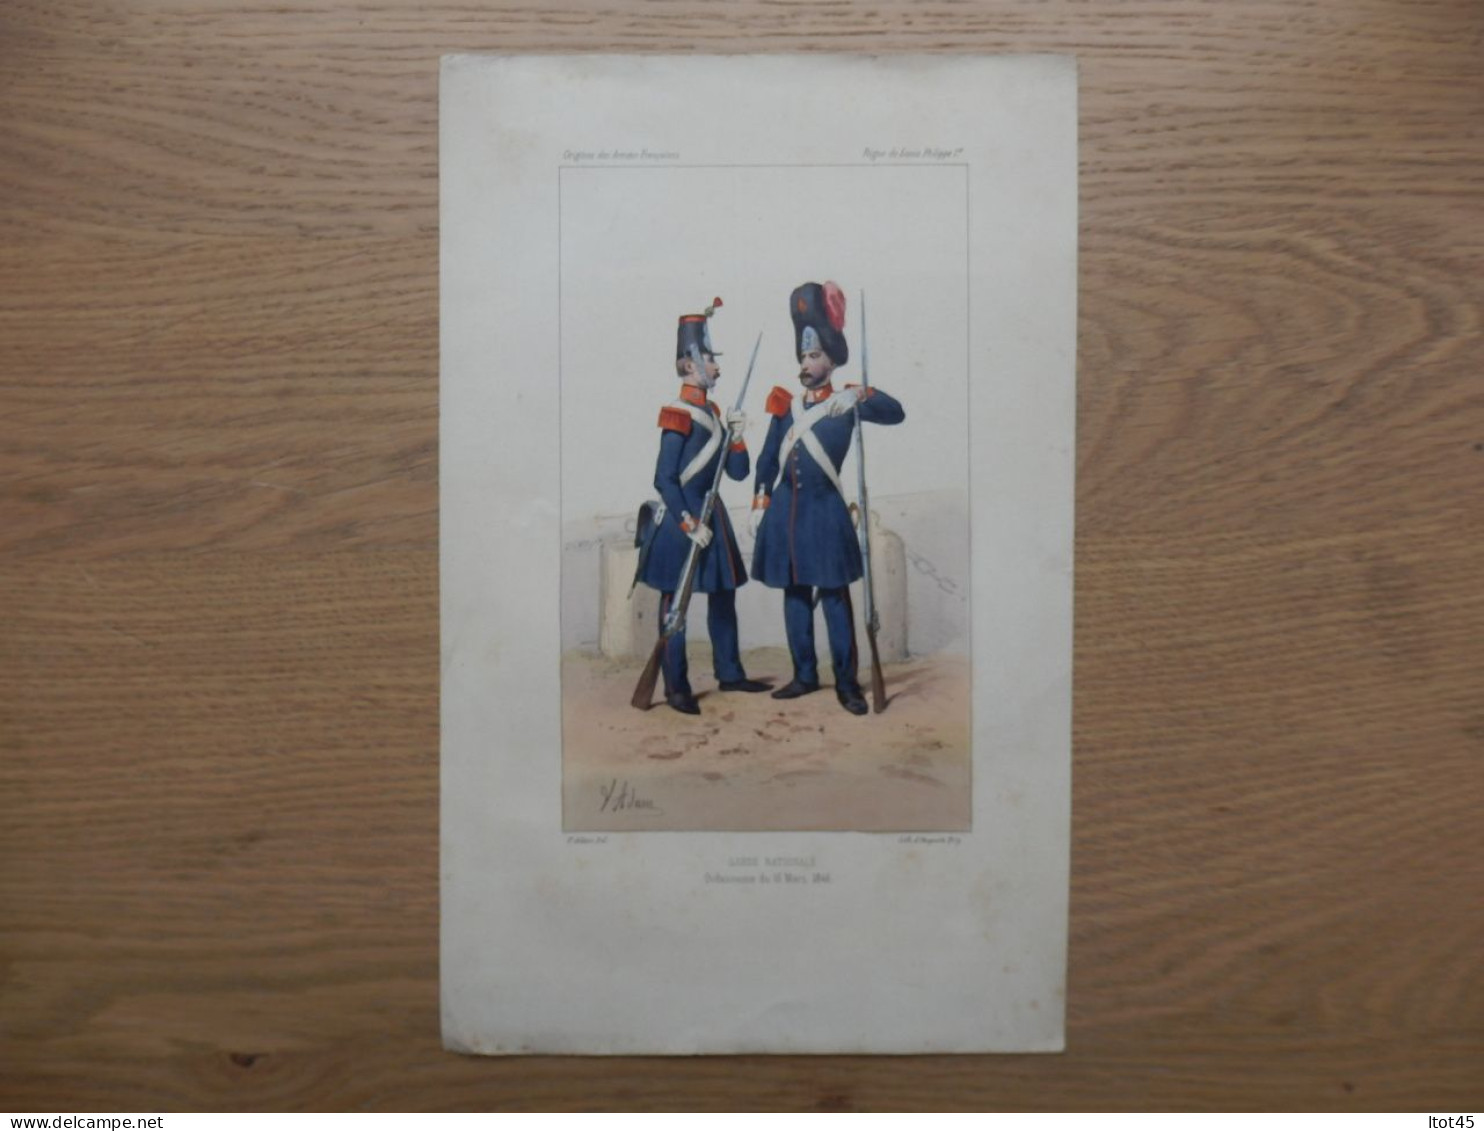 LITHOGRAPHIE REPRODUCTION GARDE NATIONALE ORDONNACE DU 16MARS 1846 - Uniforms